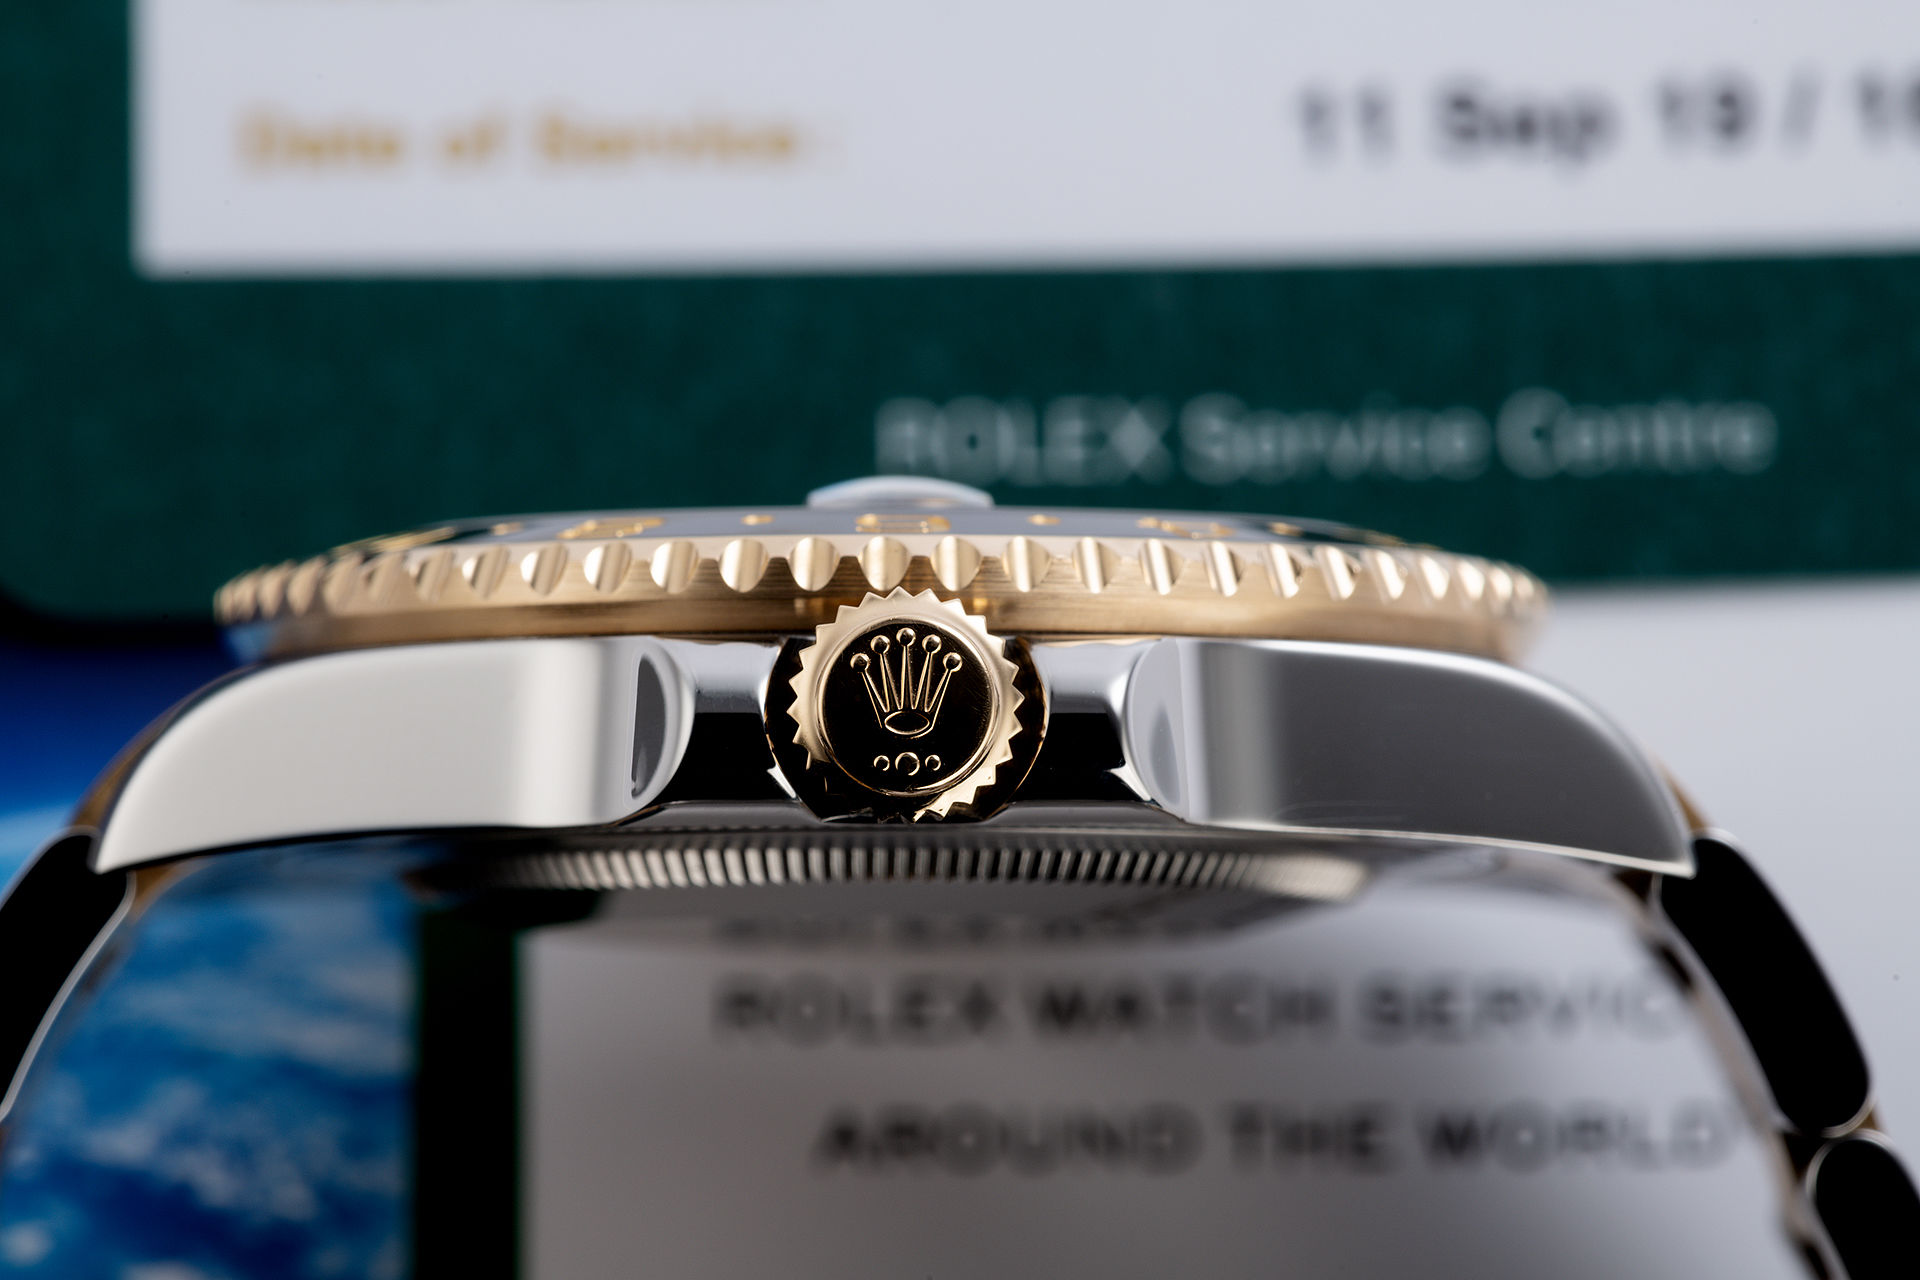 ref 116713LN | 2 Year Rolex Service Warranty | Rolex GMT-Master II